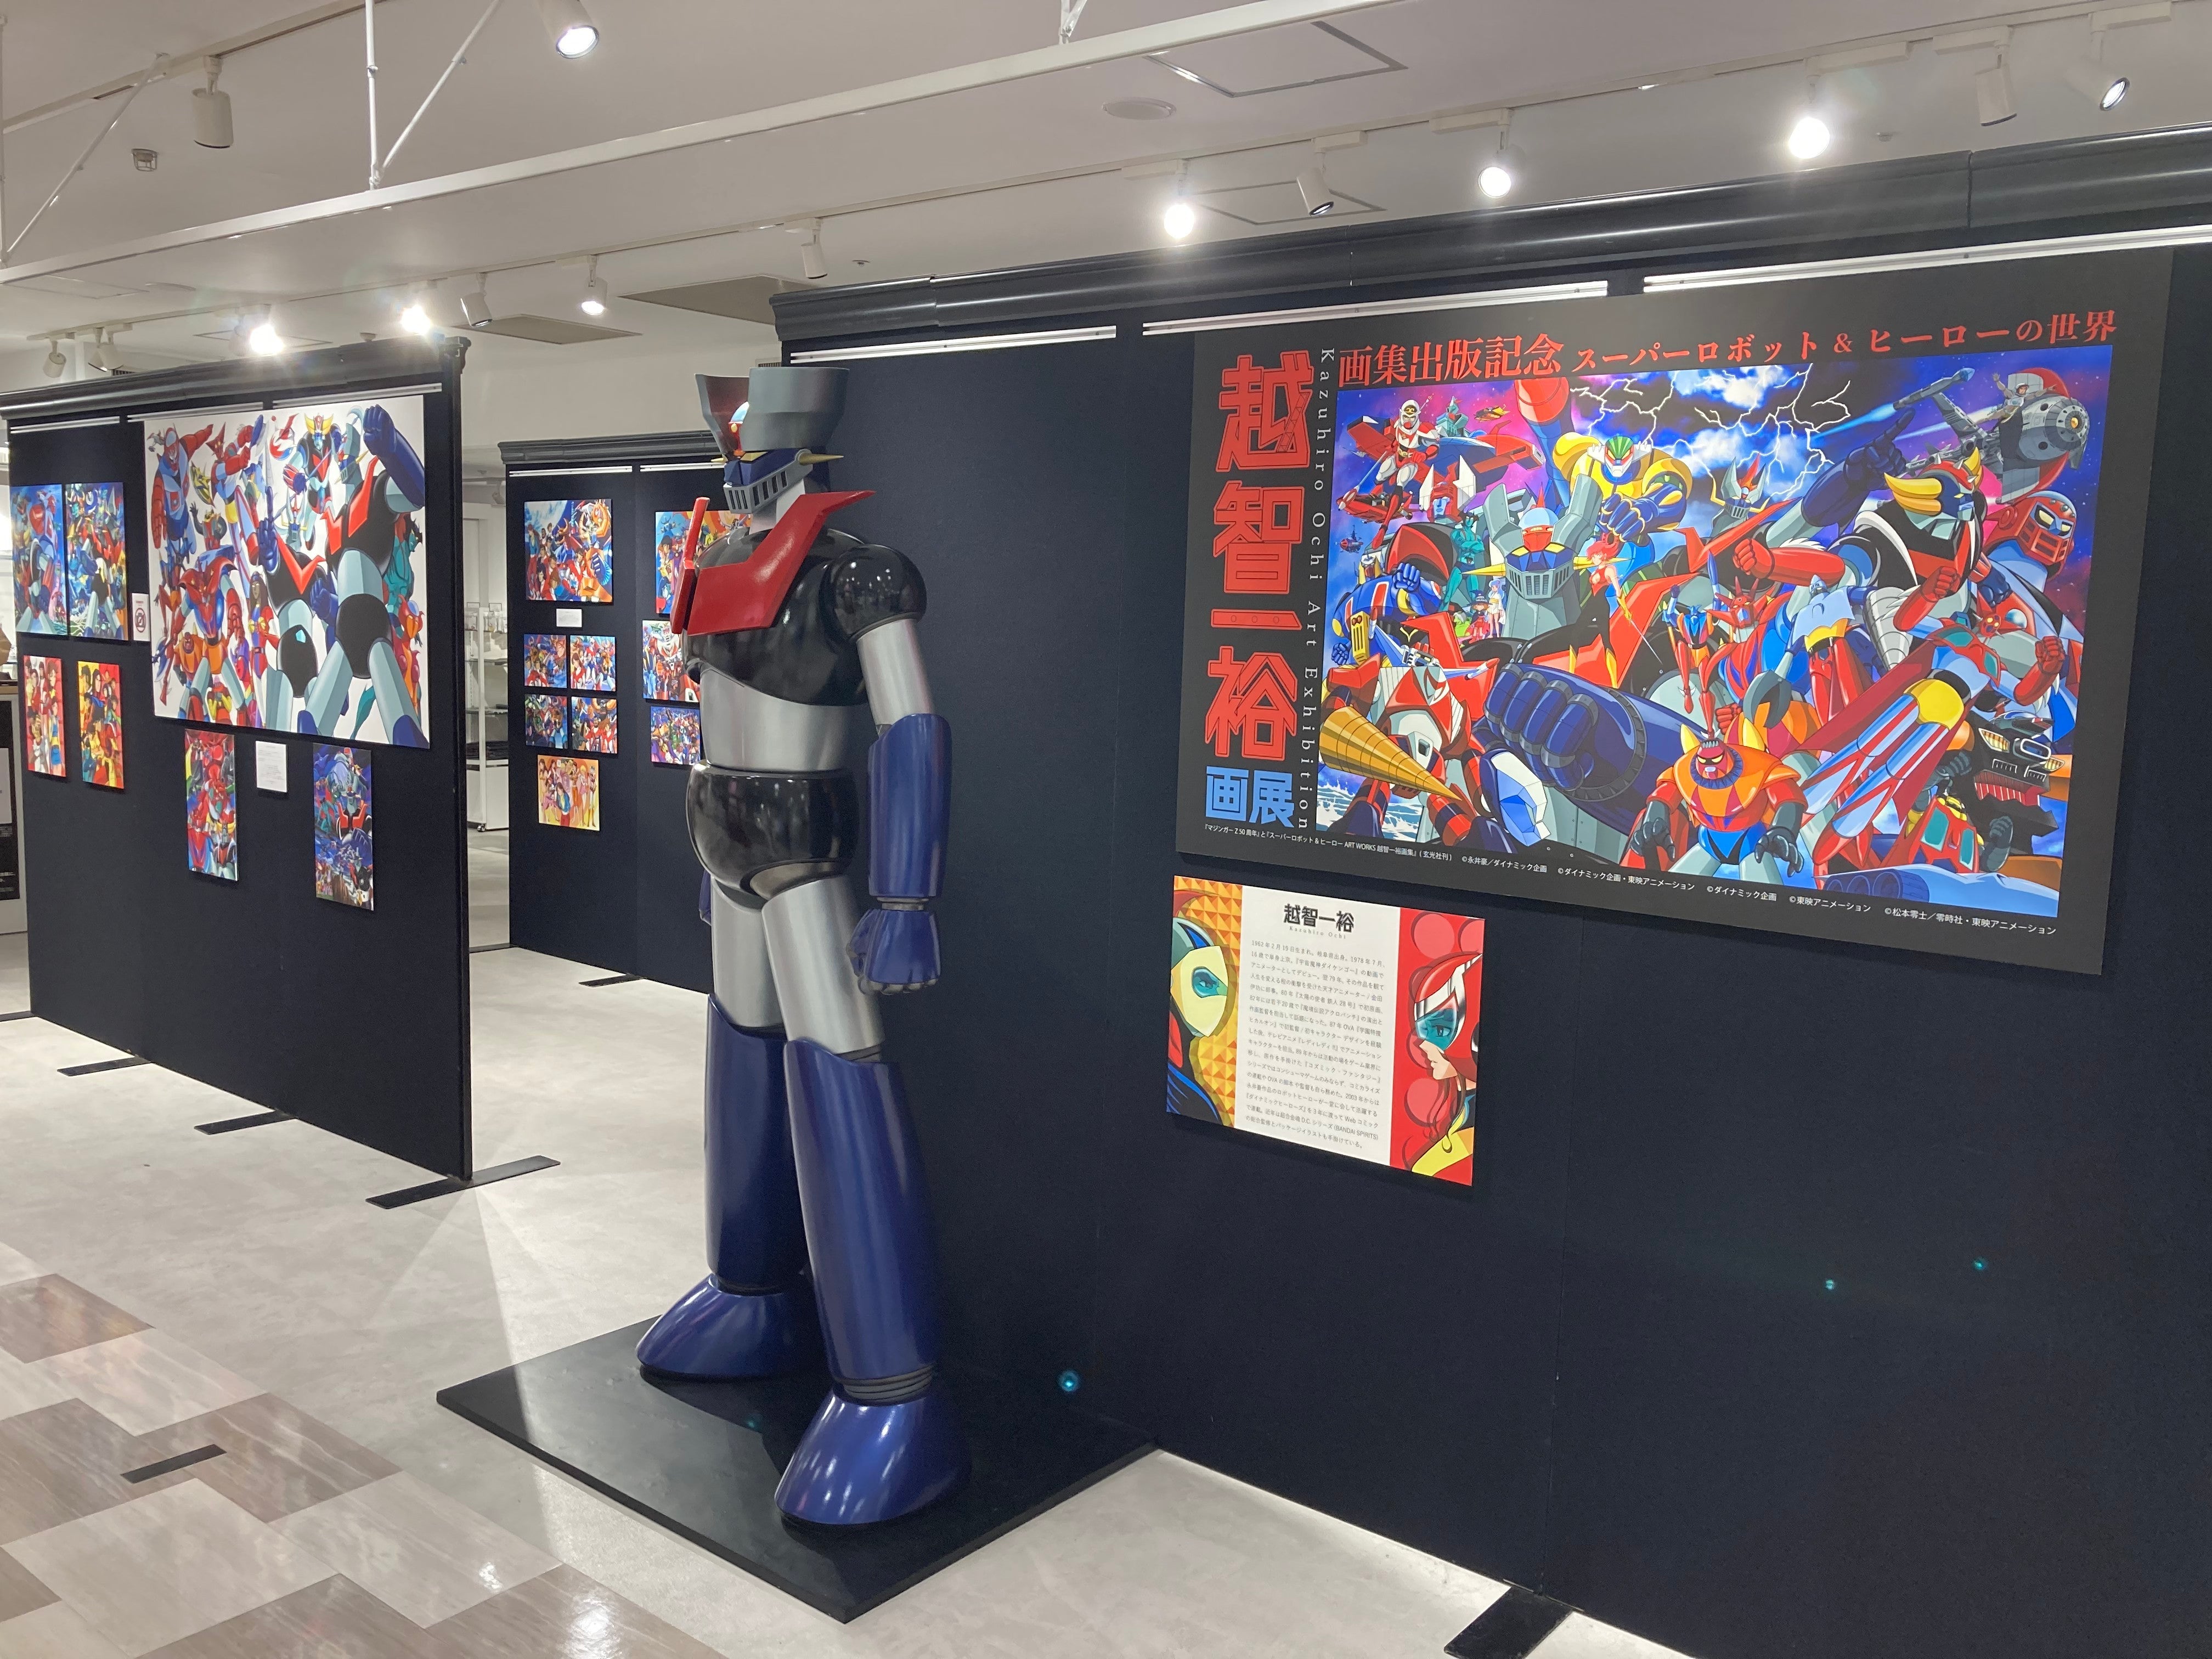 スーパーロボット&ヒーローの世界 越智一裕 画展」展示会レポート 